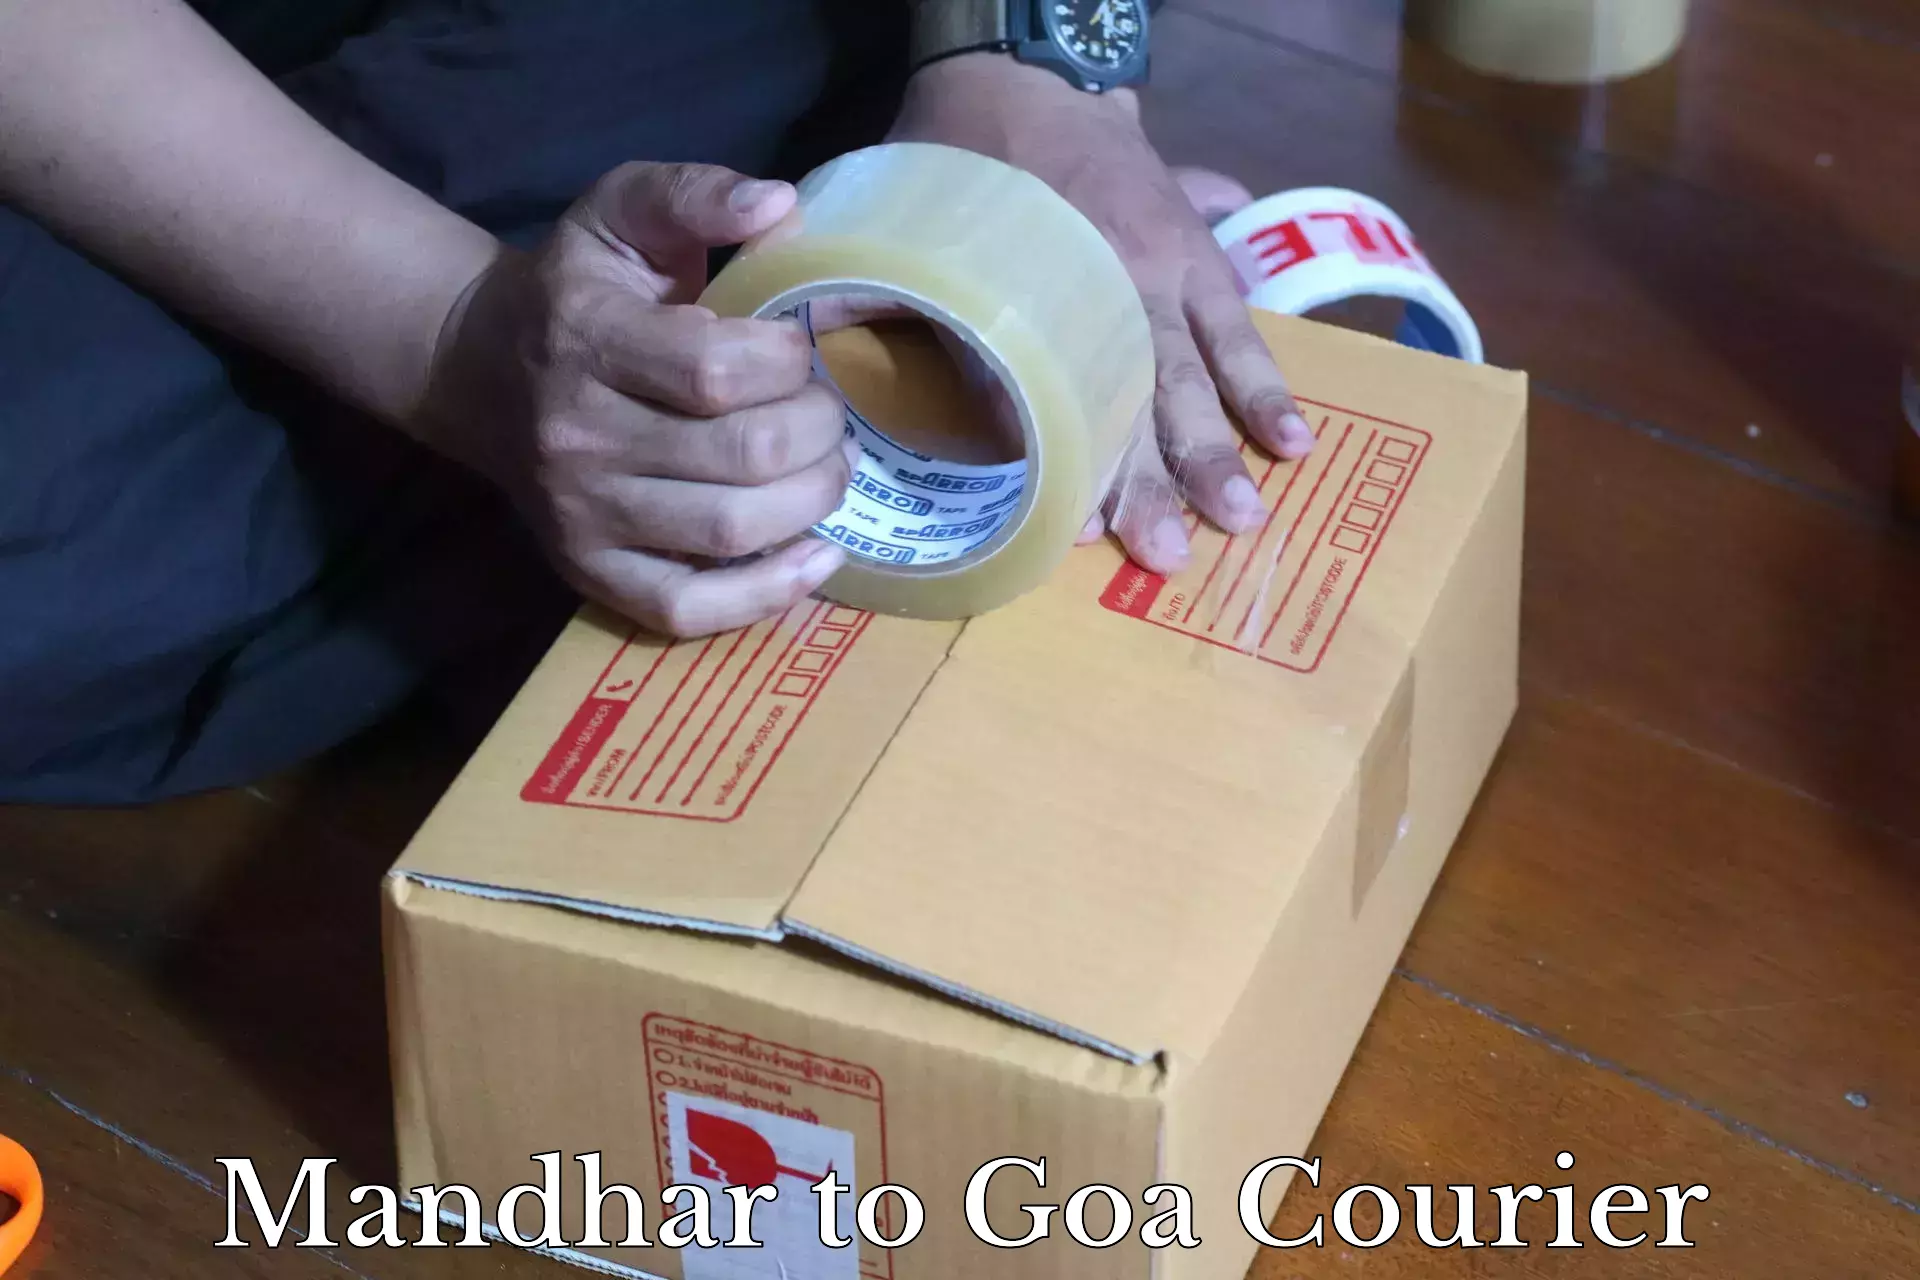 Reliable parcel services Mandhar to Bicholim